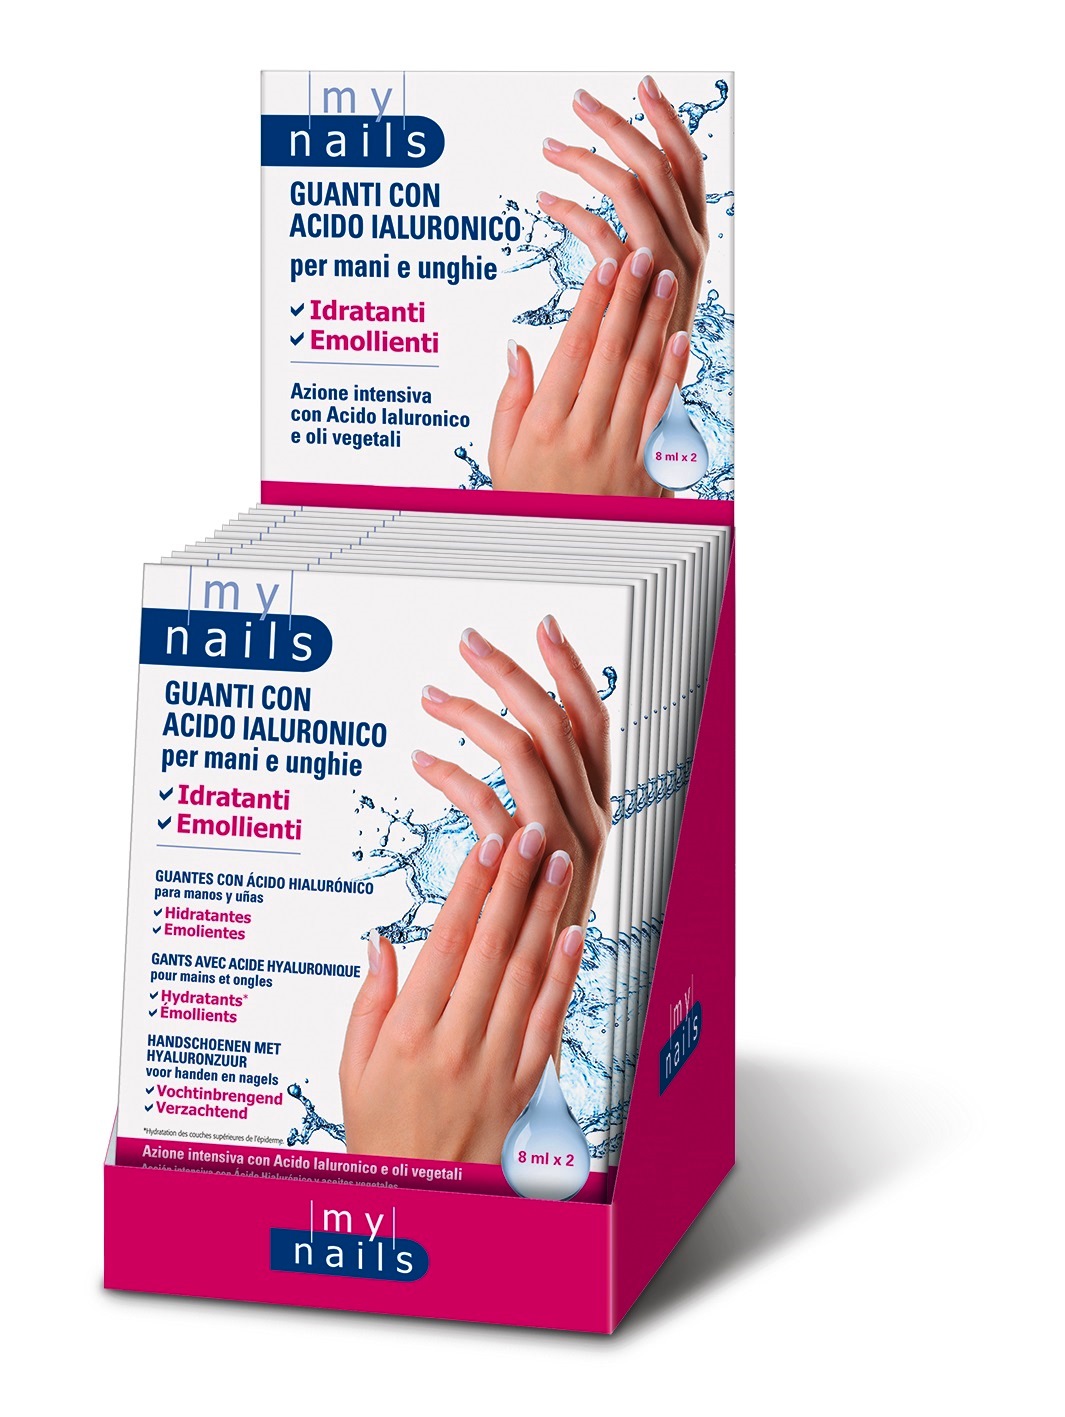 My Nails Guanti Con Acido Ialuronico, un innovativo trattamento per mani e unghie